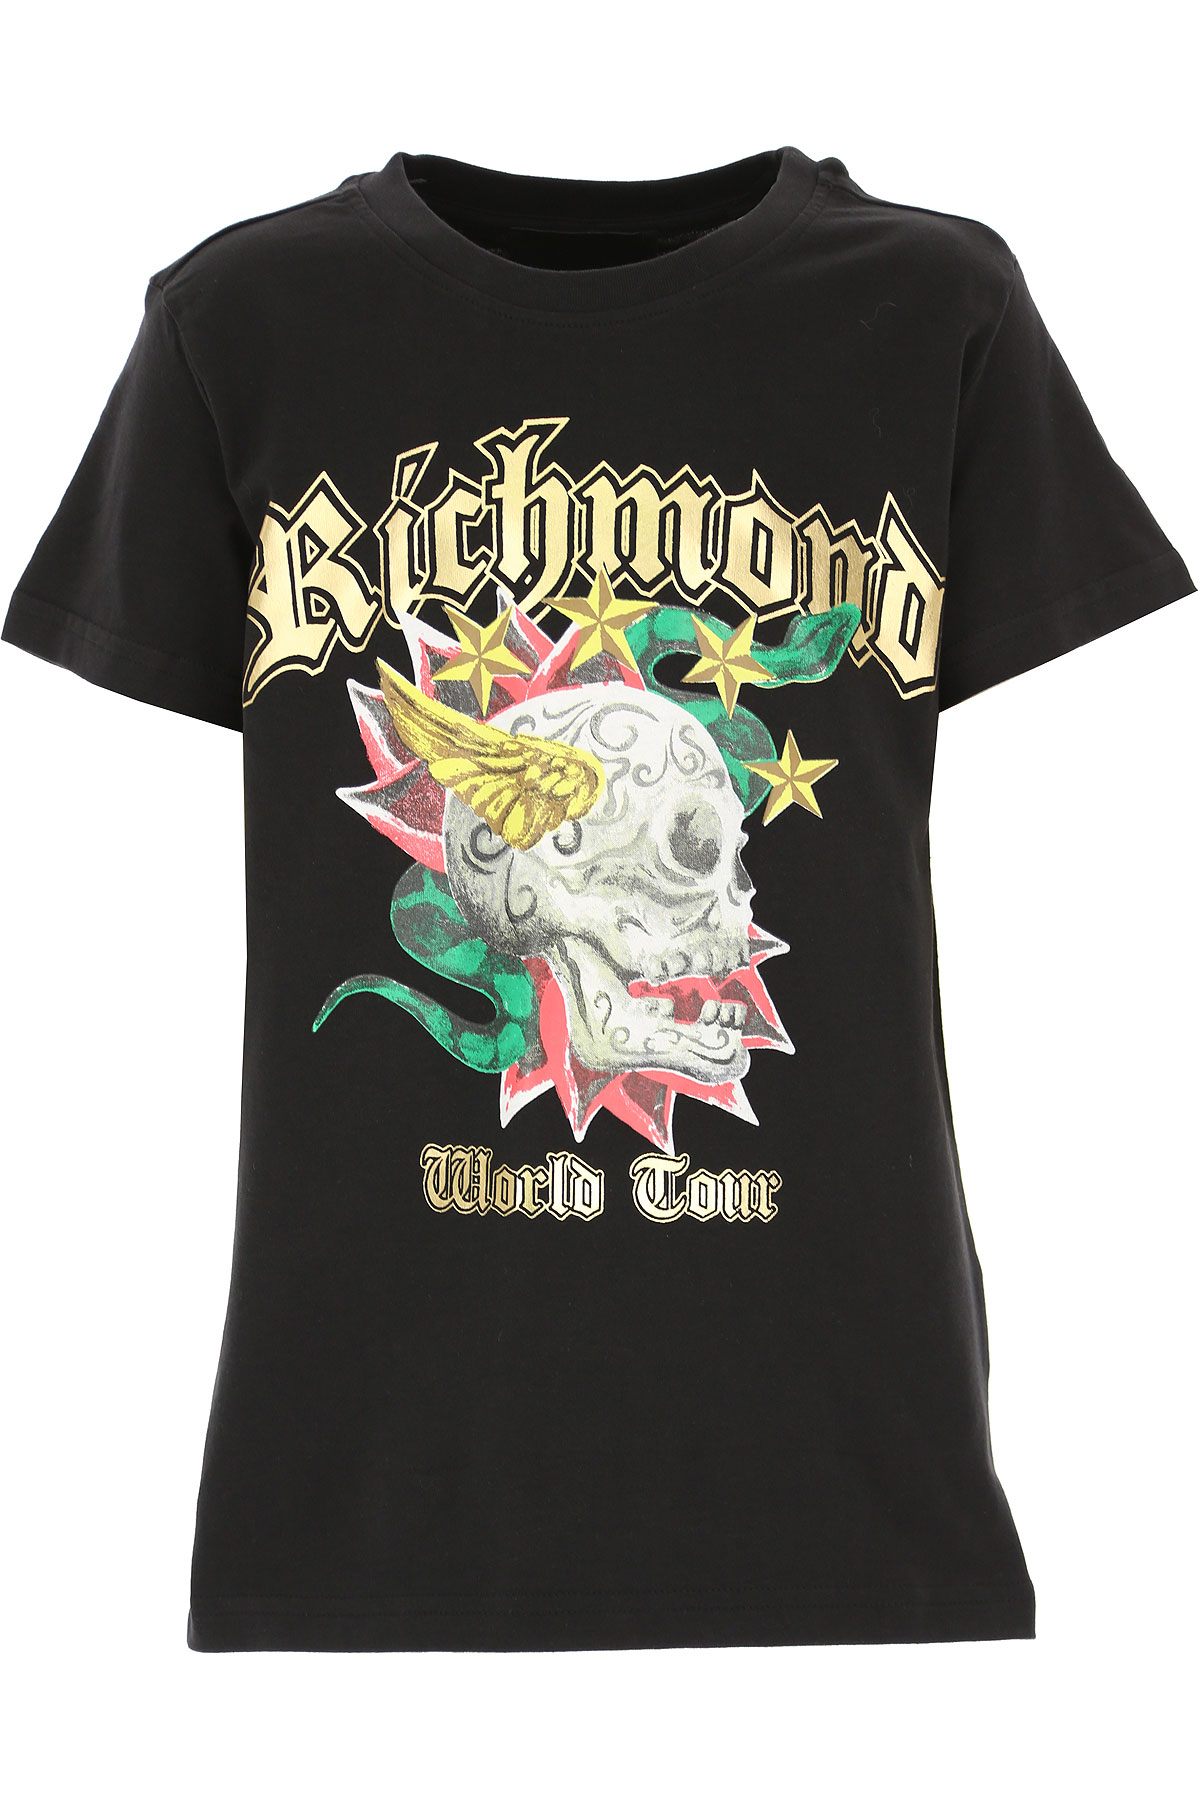 Richmond Kinder T-Shirt für Jungen Günstig im Sale, Schwarz, Baumwolle, 2017, 10Y 12Y 16Y 4Y 6Y